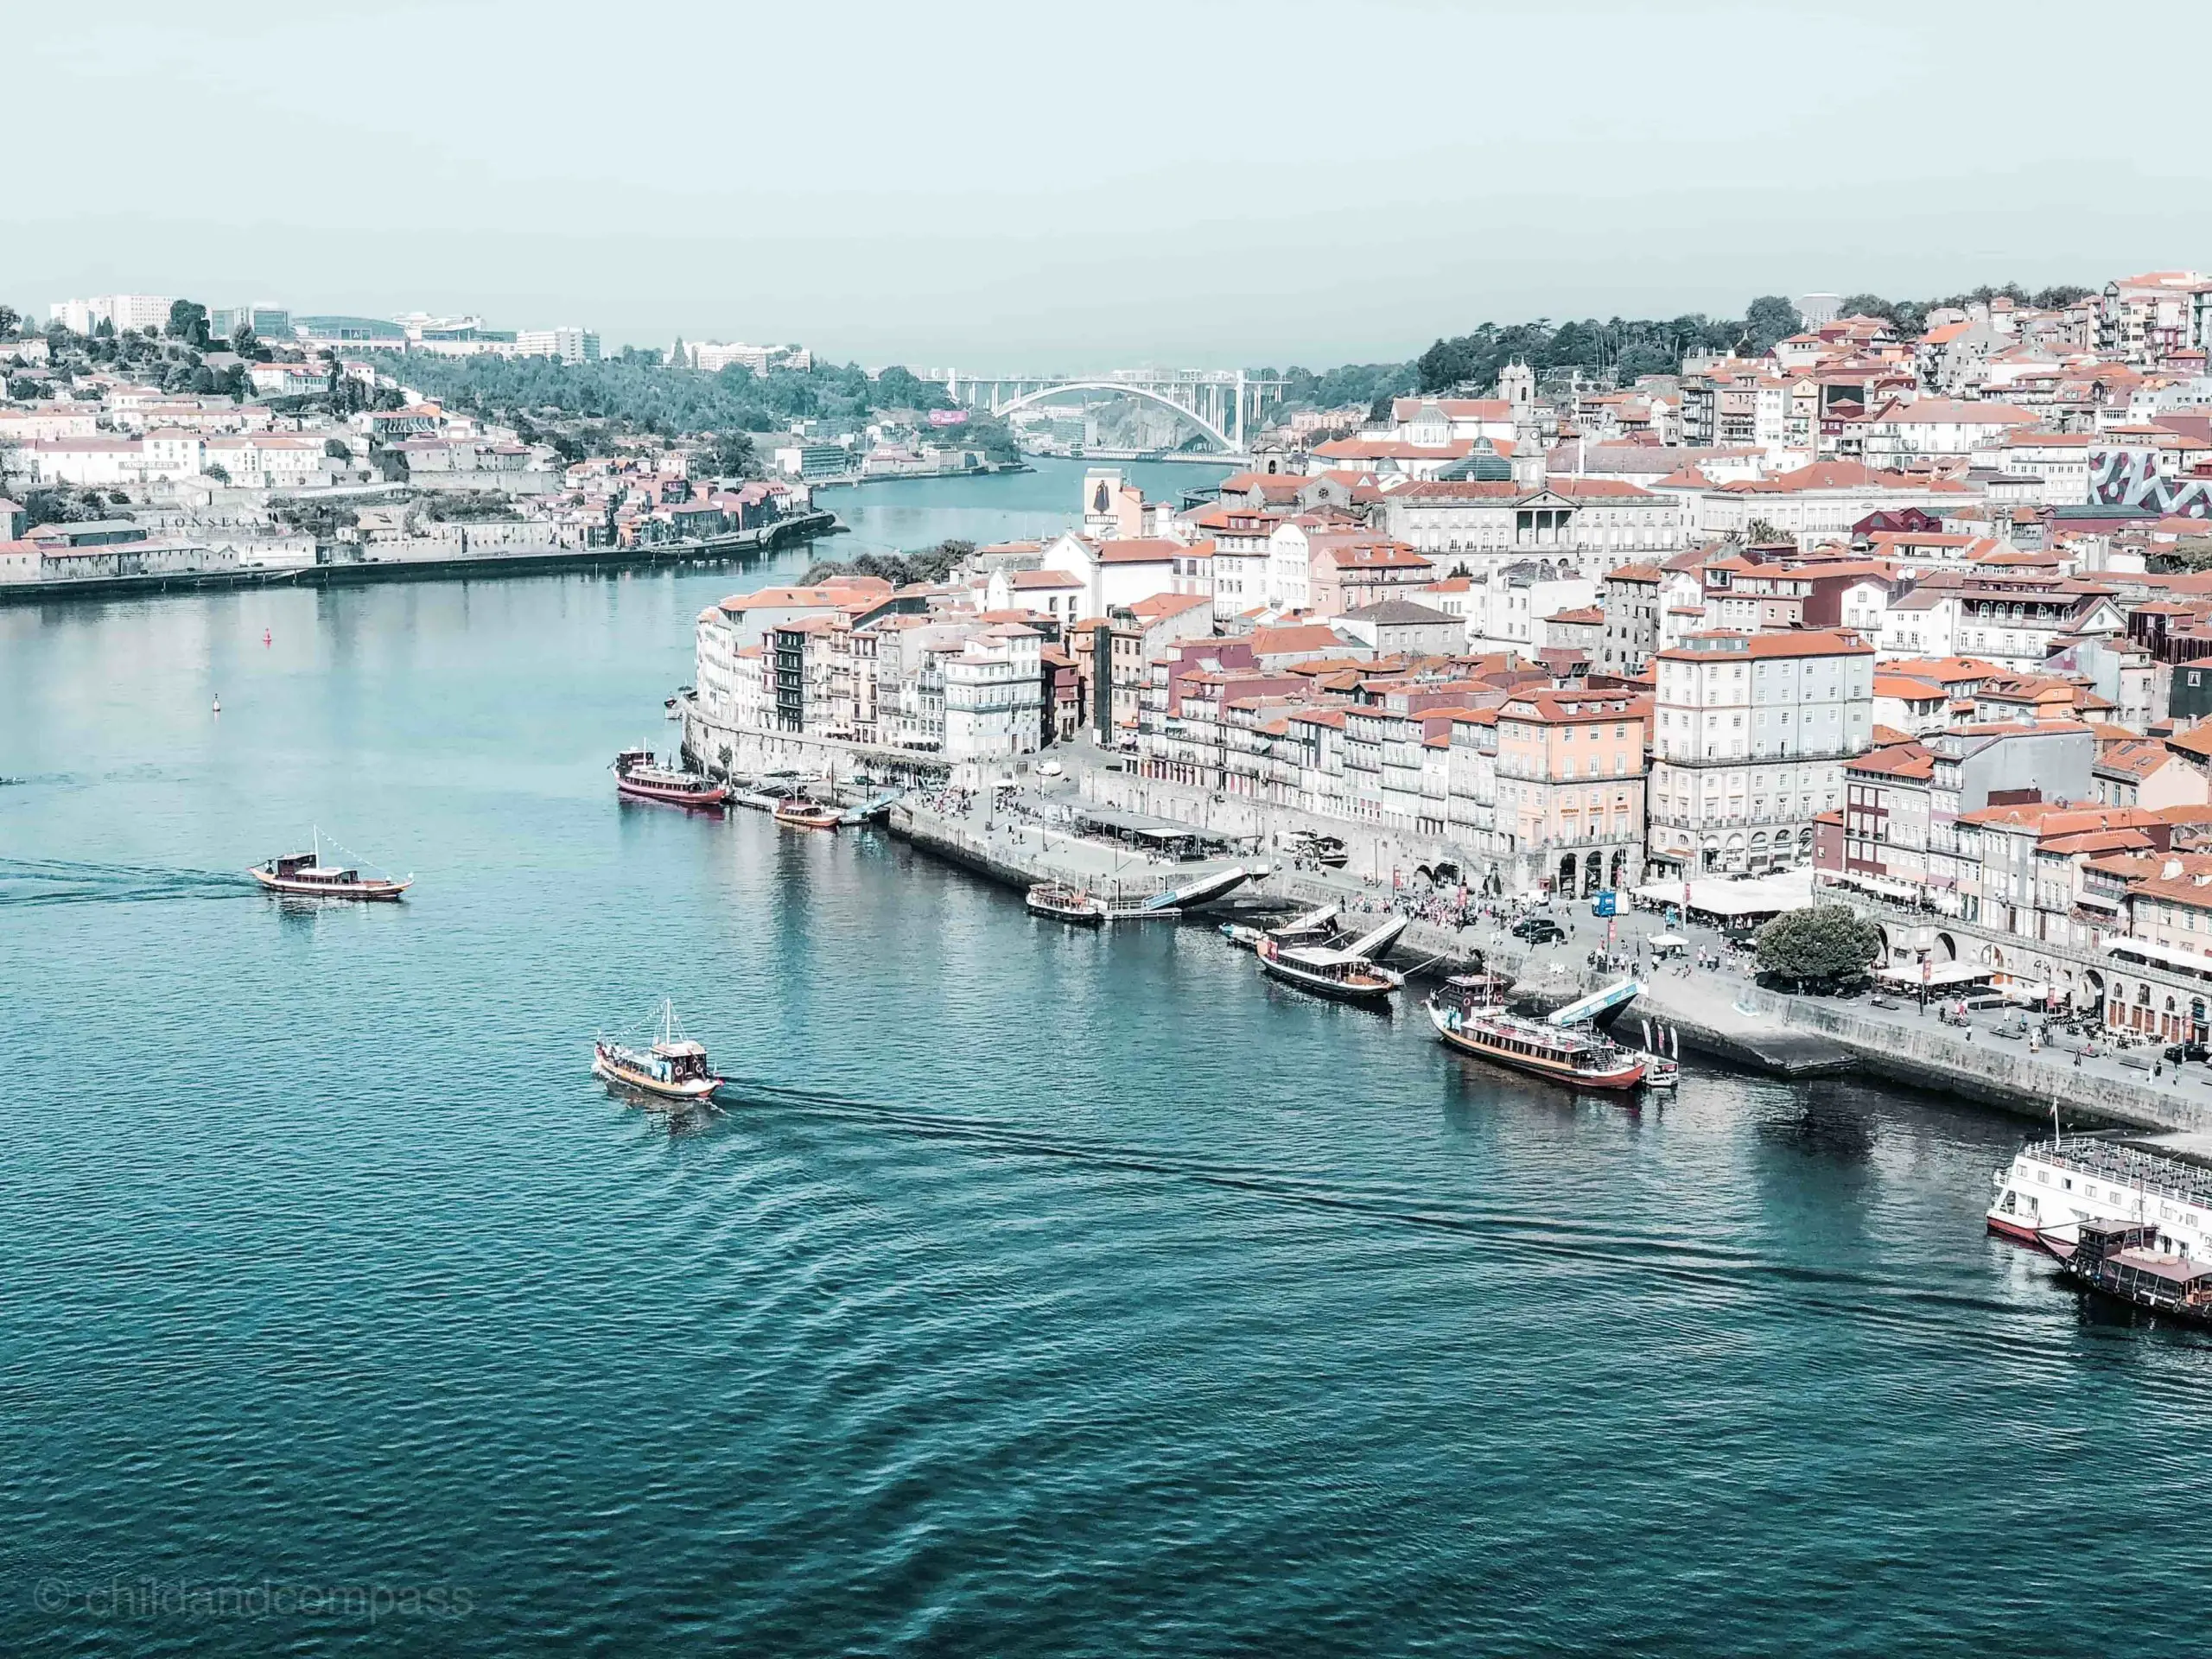 Städtereisen an Ostern, Tipps für Osterurlaub, Städtetrip an Ostern, Porto Sehenswürdigkeiten, Douro Fluss, Ribeira